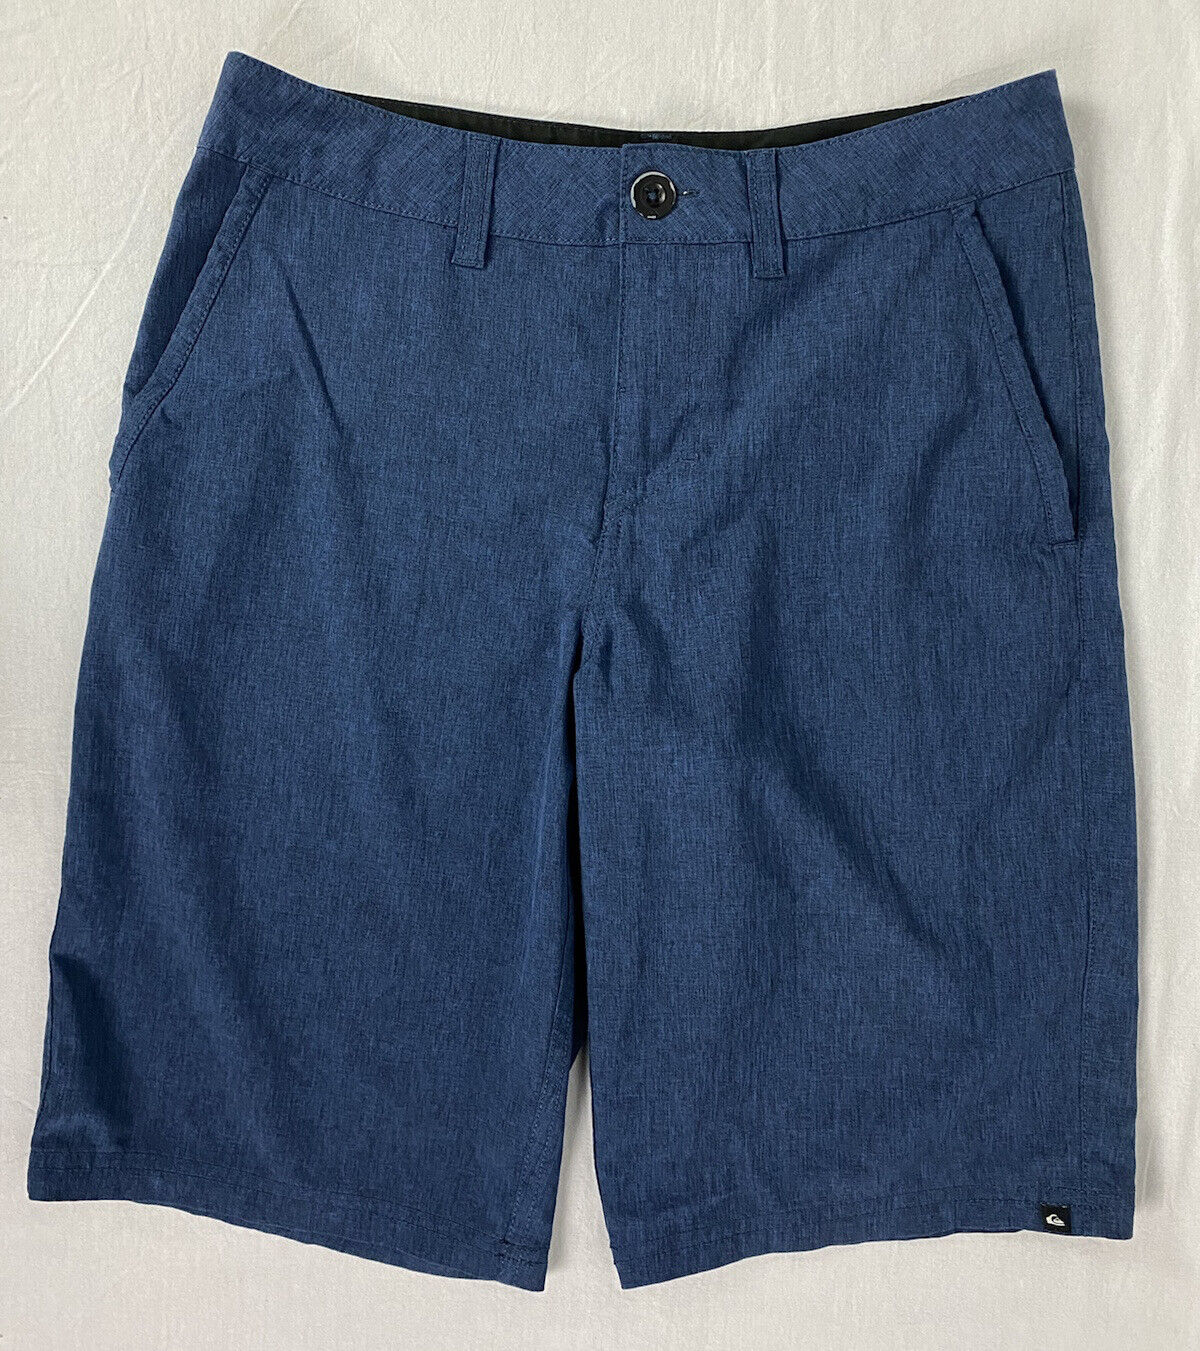 Quicksilver Amphibians Blue Shorts, Men's Size 28 - image 1